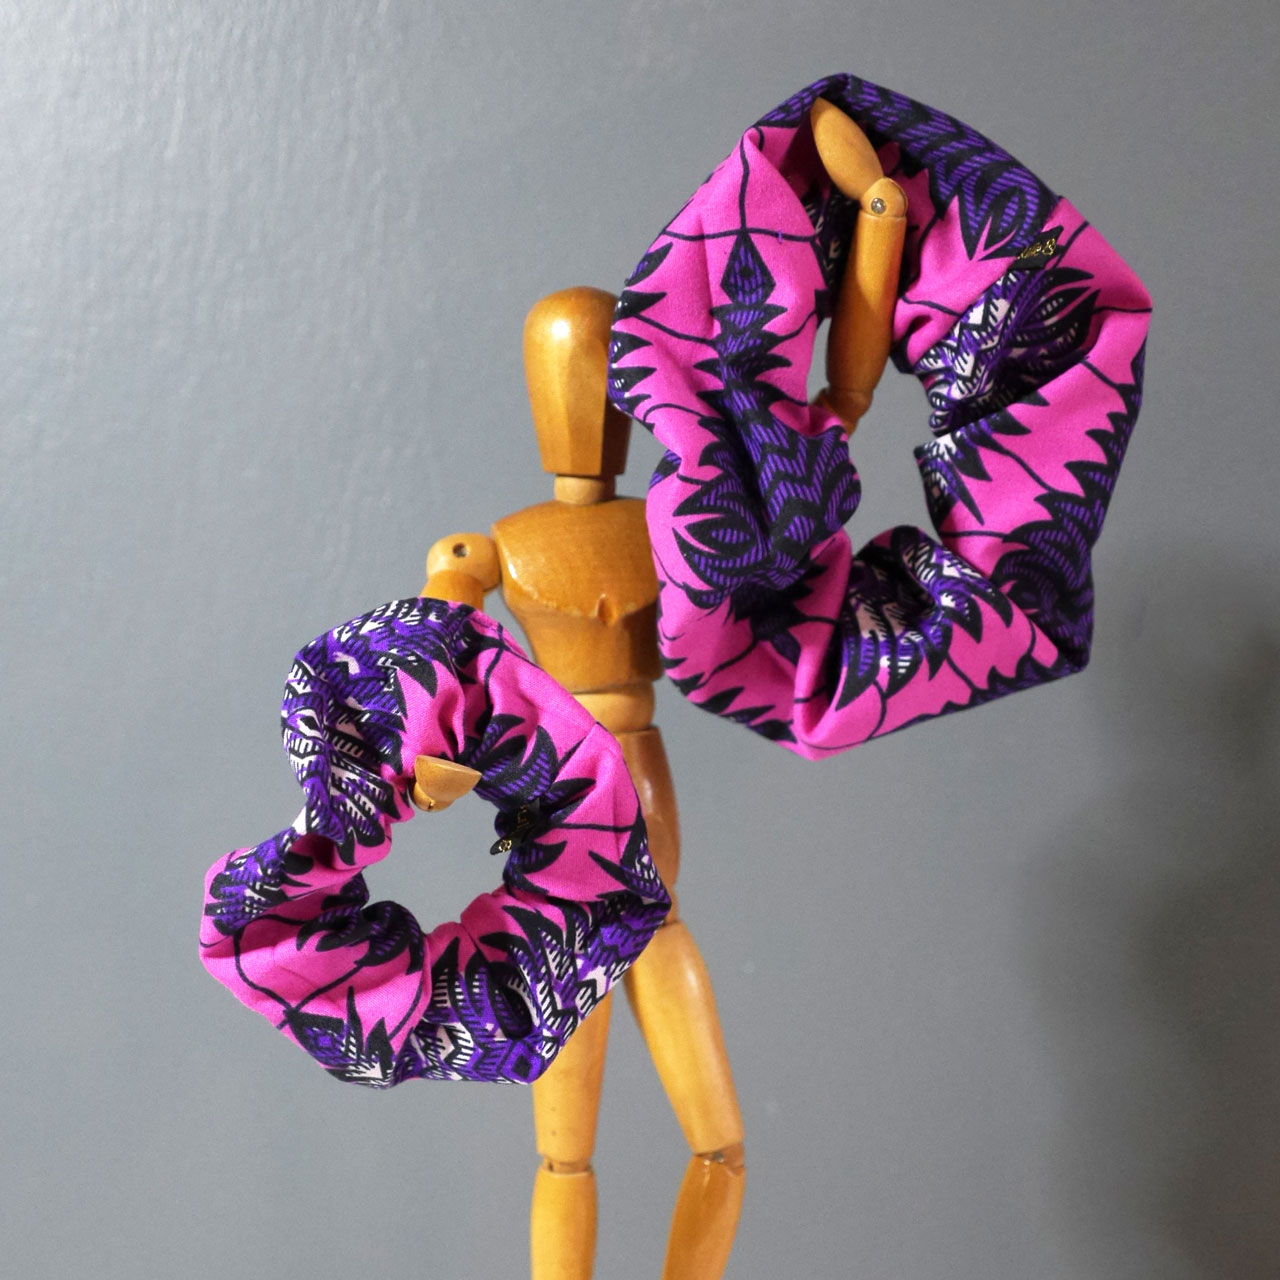 Chouchou élastique tissu wax violet et rose fuchsia cousu à la main taille femme adulte ou enfant petite fille accessoire mode cheveux coiffure original - Julie & COo